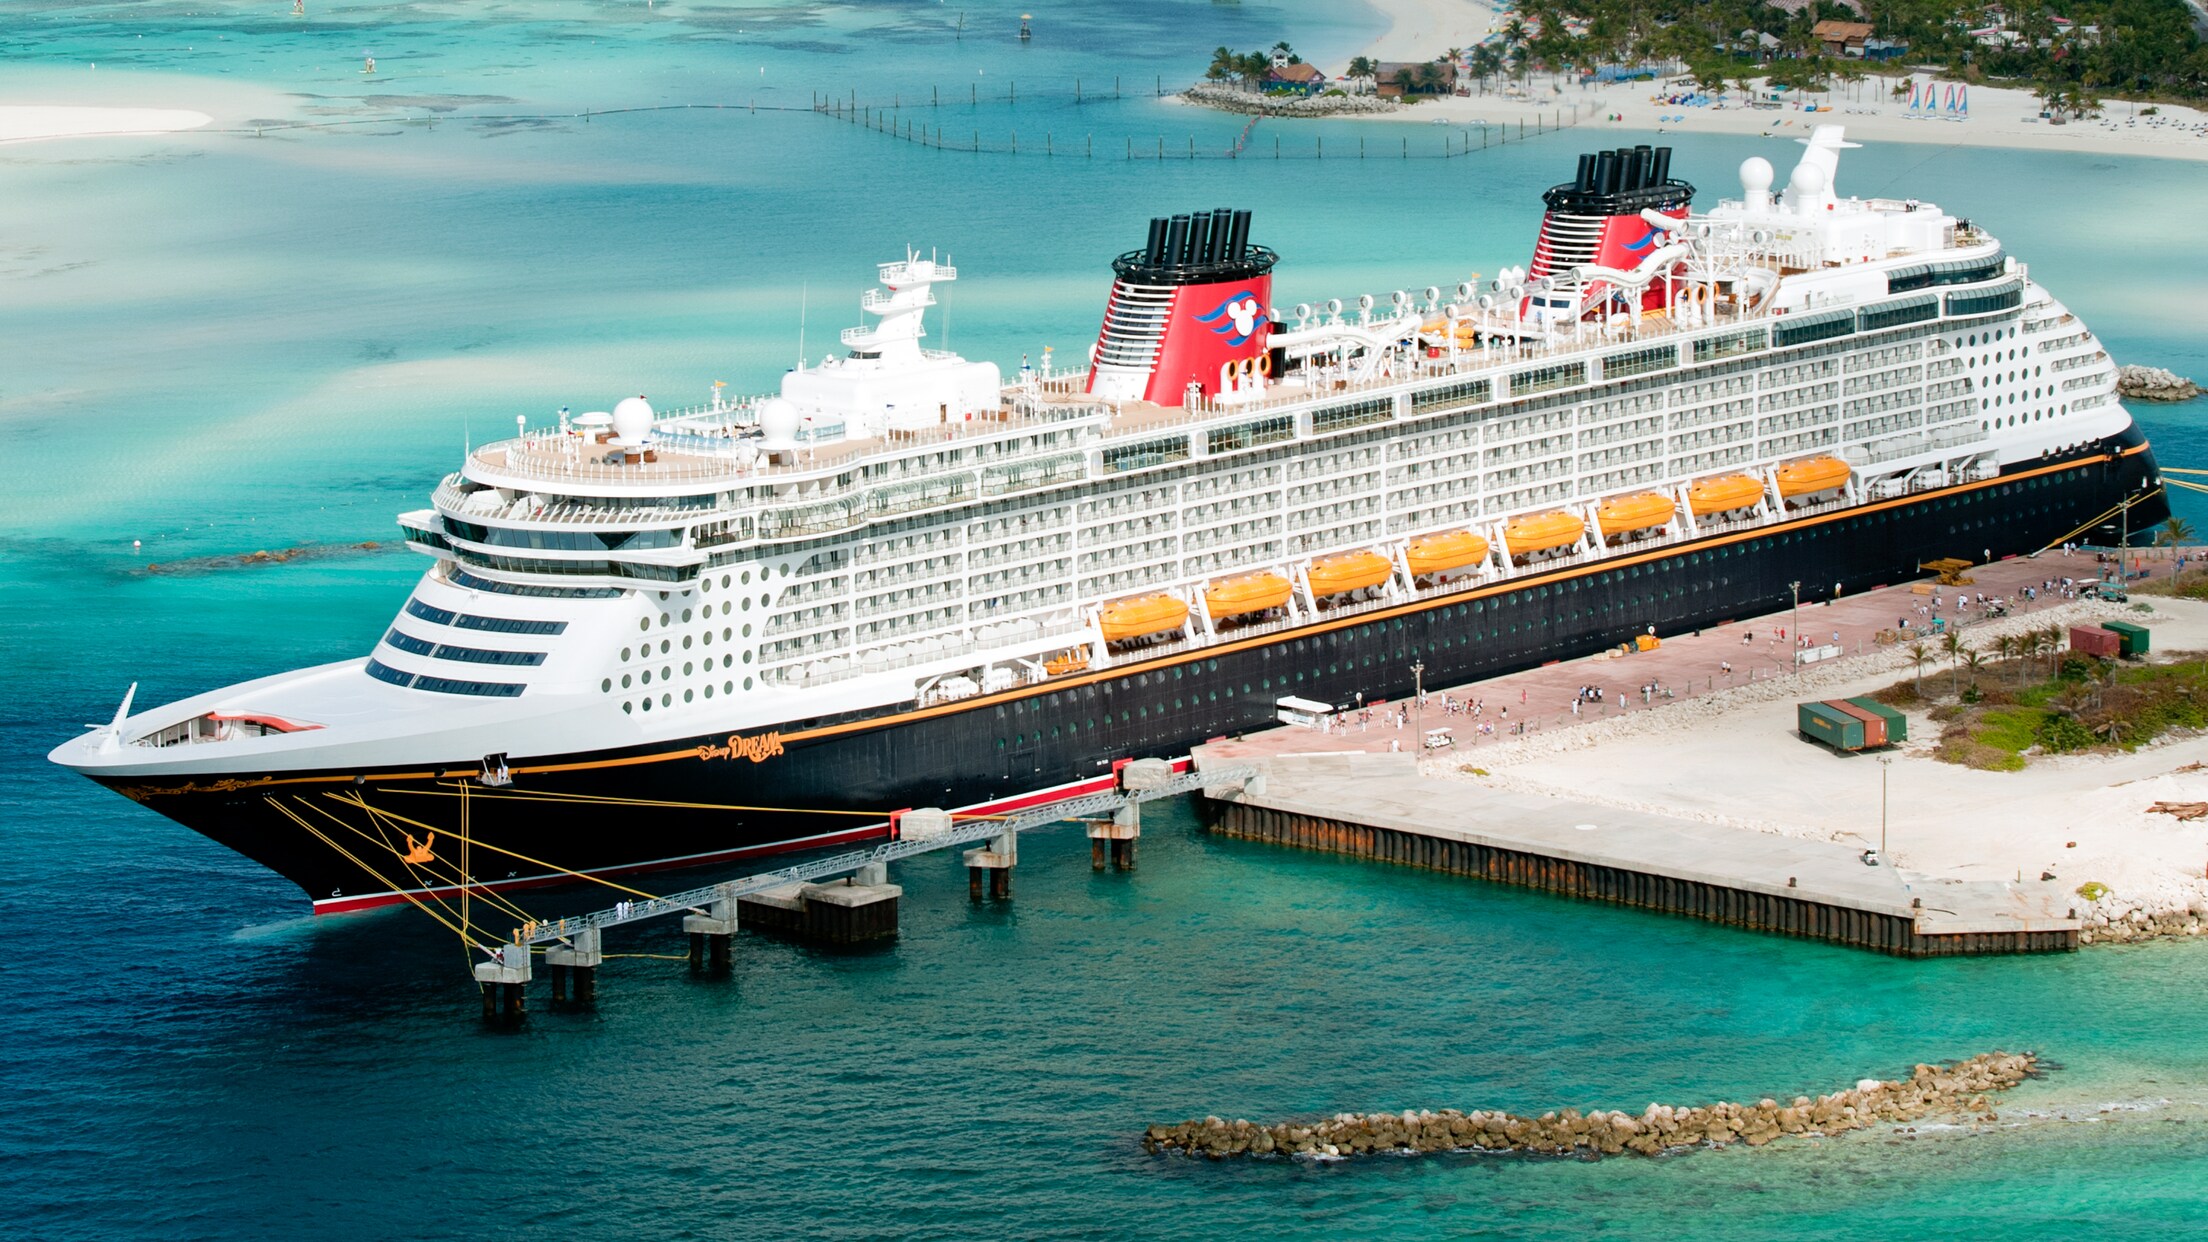 disney cruise 3 day bahamas